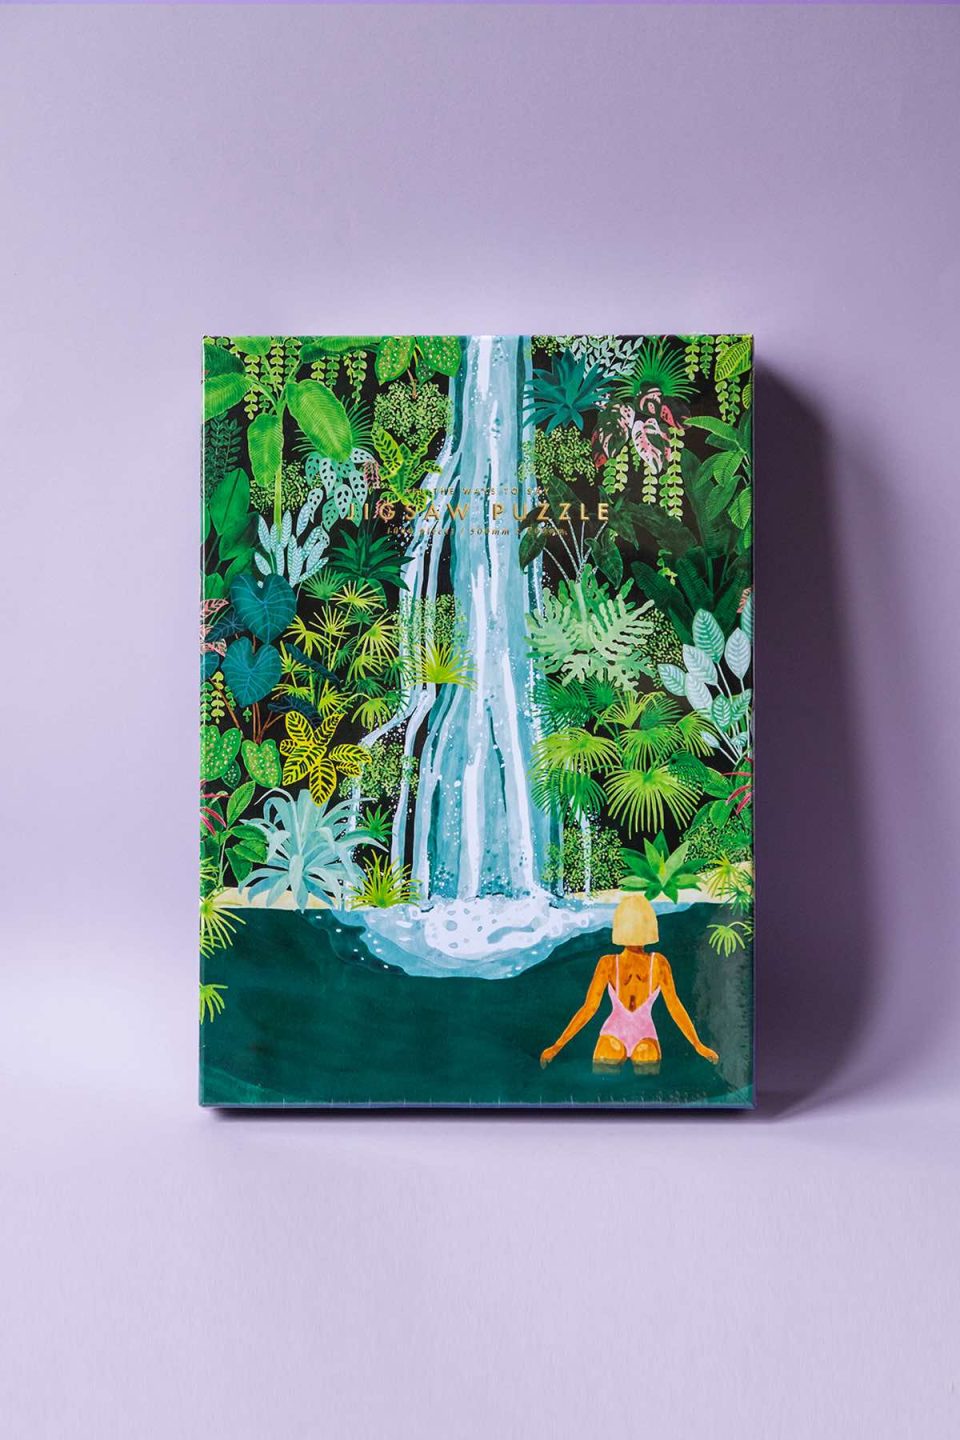 Kutija puzli s motivom vodopada u prašumi, žena se kupa u vodi na ljubičastoj podlozi